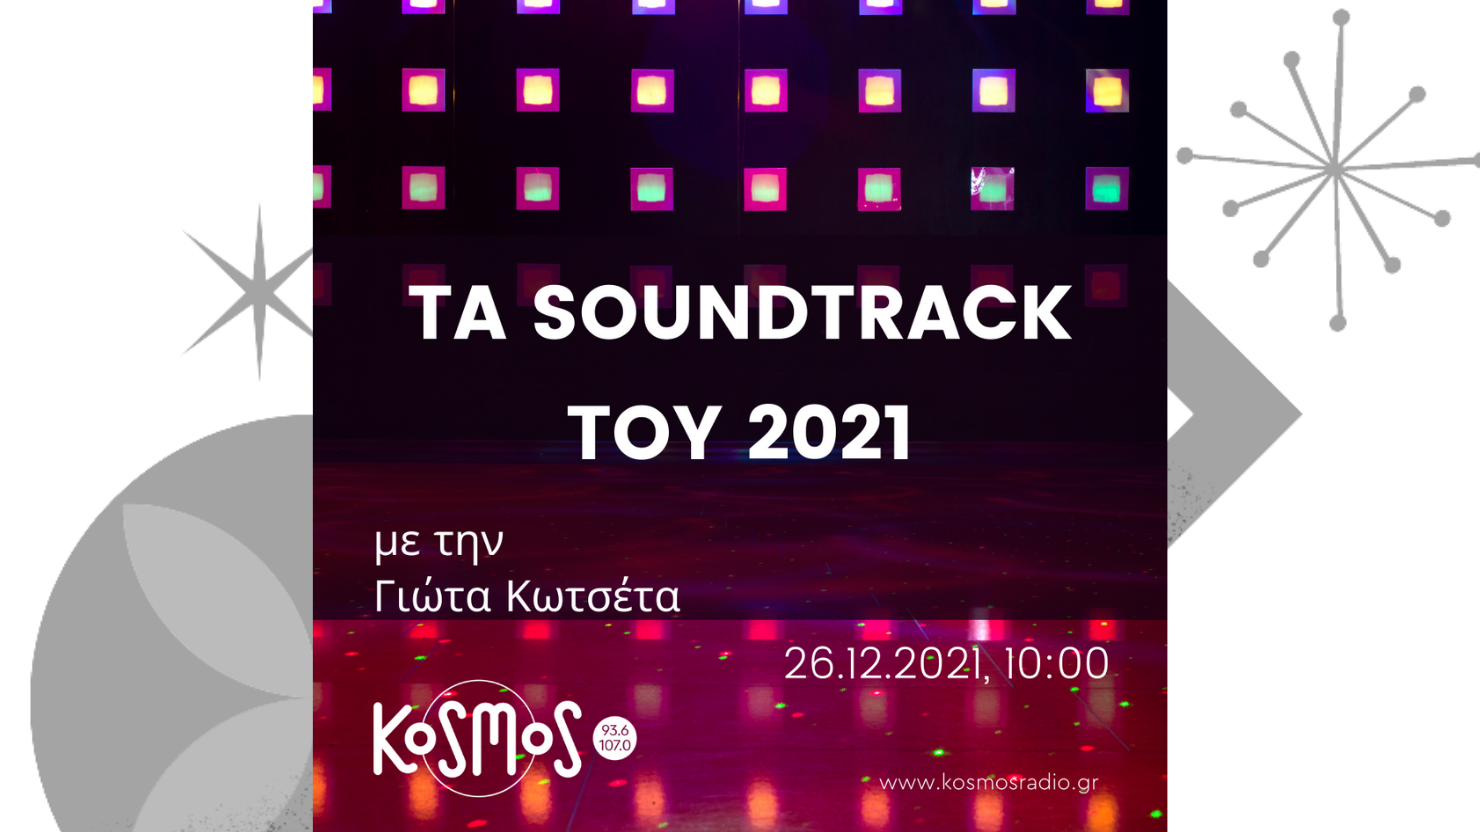 Ακούστε το αφιέρωμα στα soundtrack του 2021 με τη Γιώτα Κοτσέτα (Μεταδόθηκε: 26.12.2021)